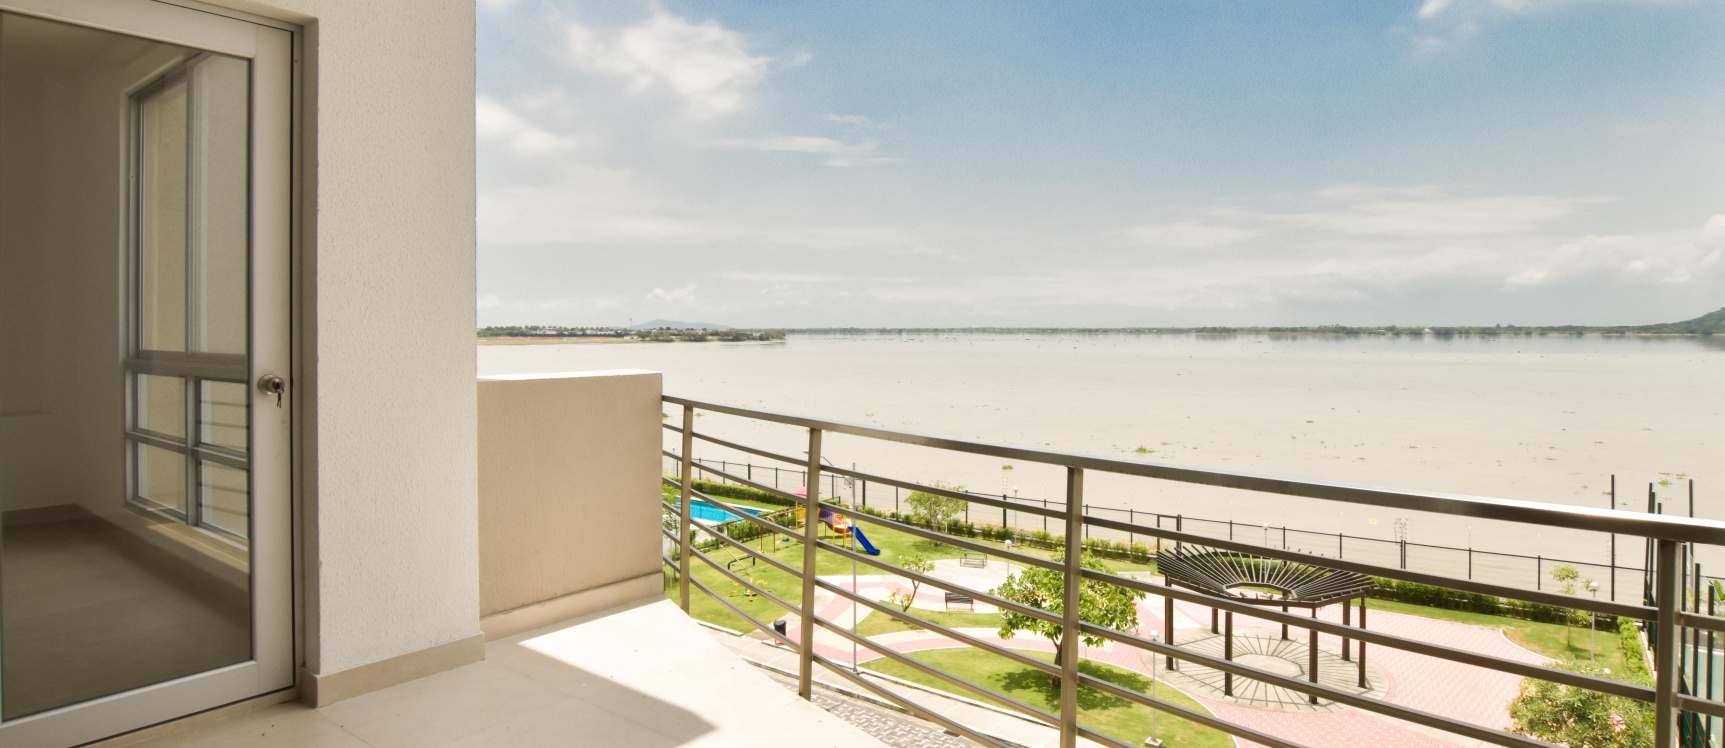 GeoBienes - Departamento por estrenar en venta con vista al río , urbanización Belice - Plusvalia Guayaquil Casas de venta y alquiler Inmobiliaria Ecuador